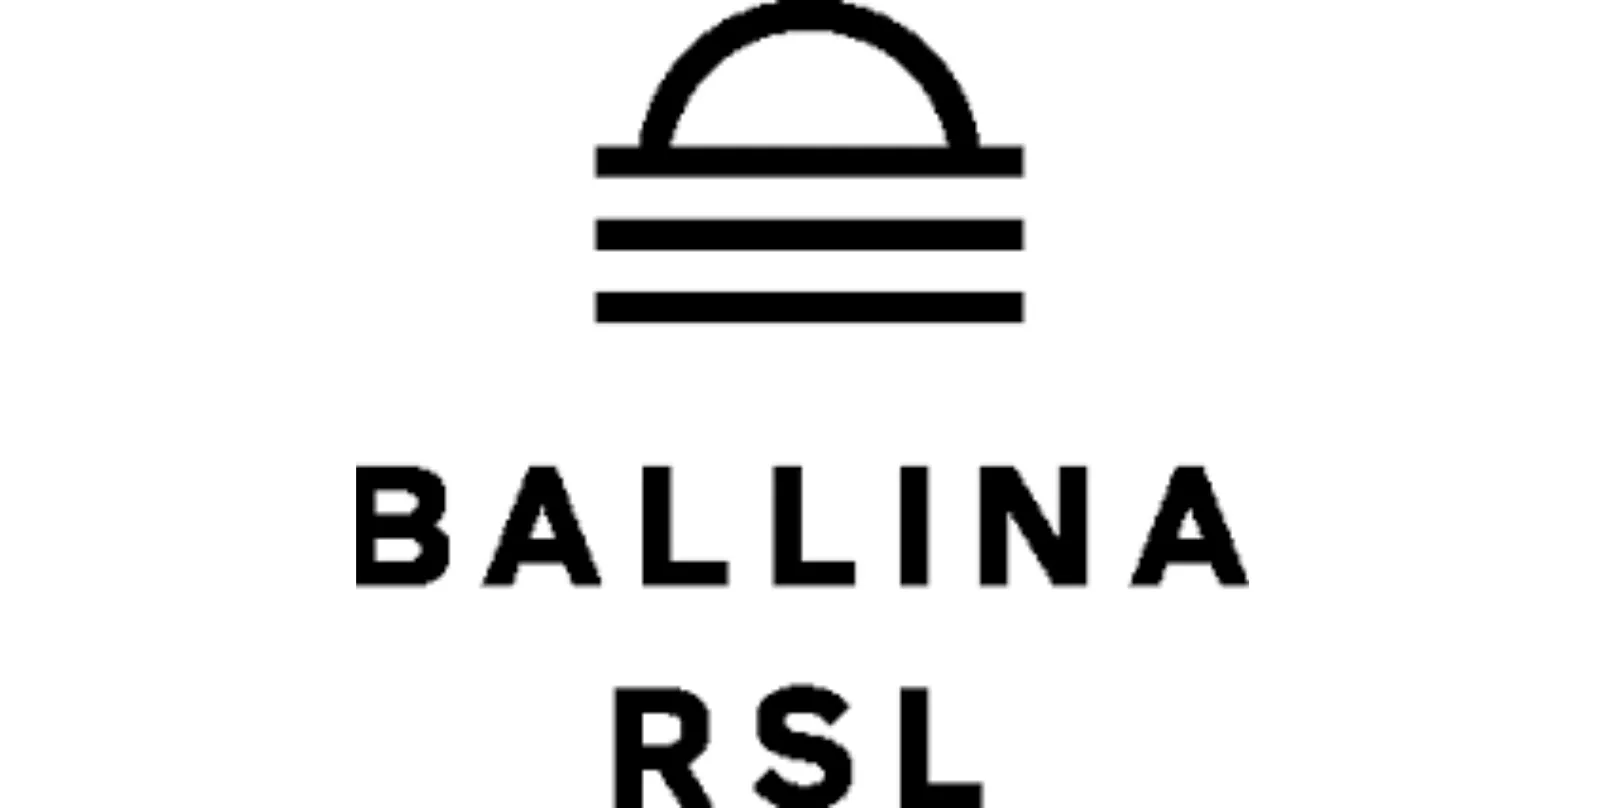 ballina rsl menu